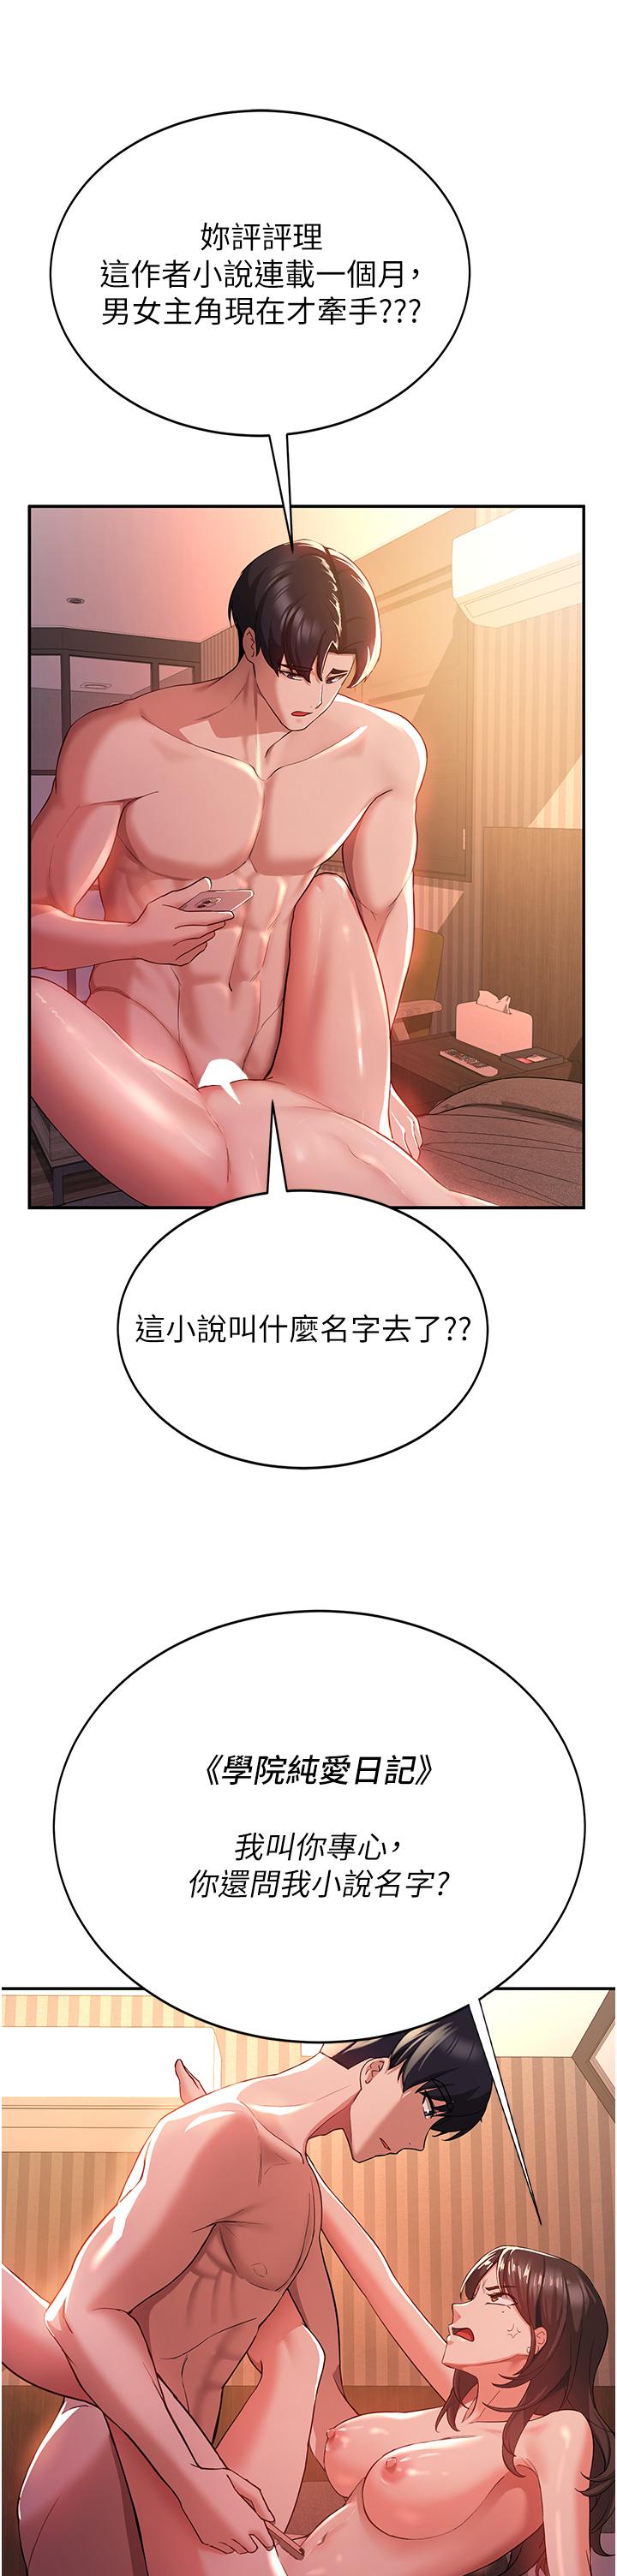 韩国污漫画 搶女友速成班 第1话-穿越到小说里了？！ 8